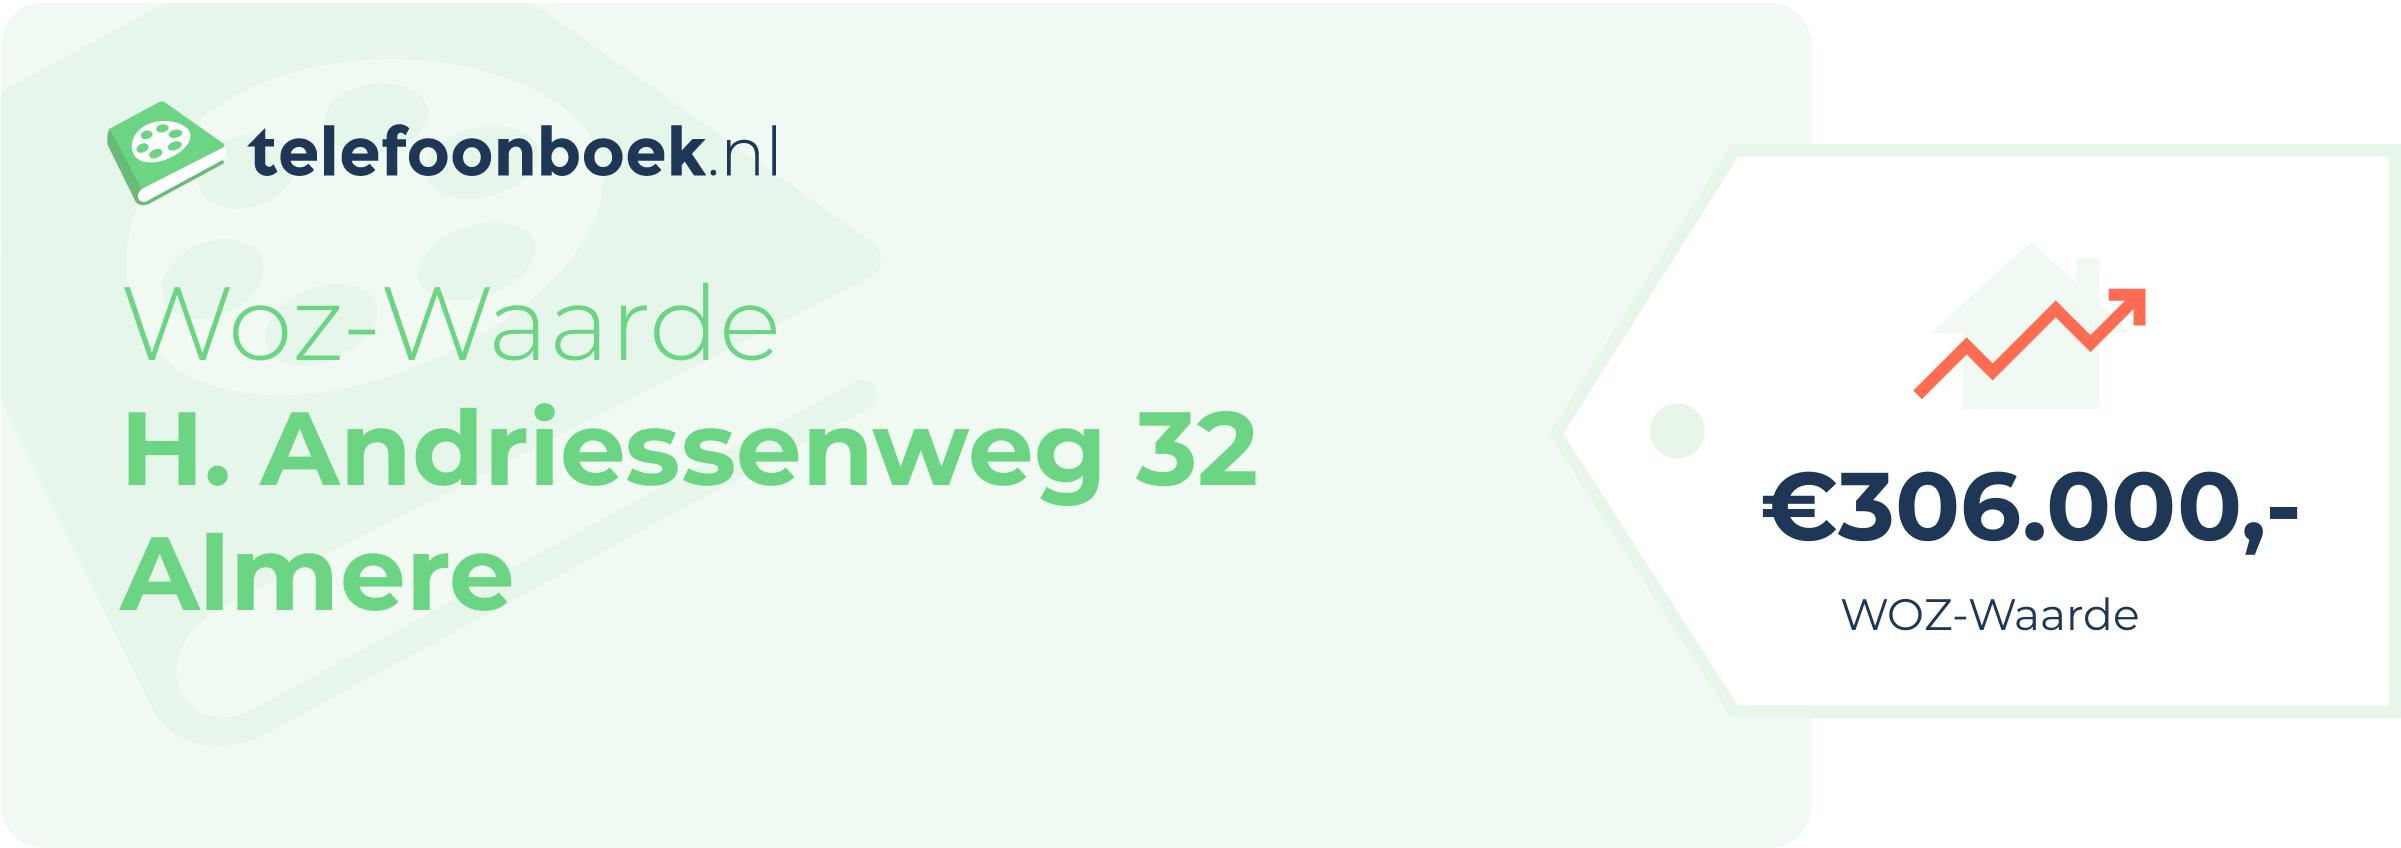 WOZ-waarde H. Andriessenweg 32 Almere